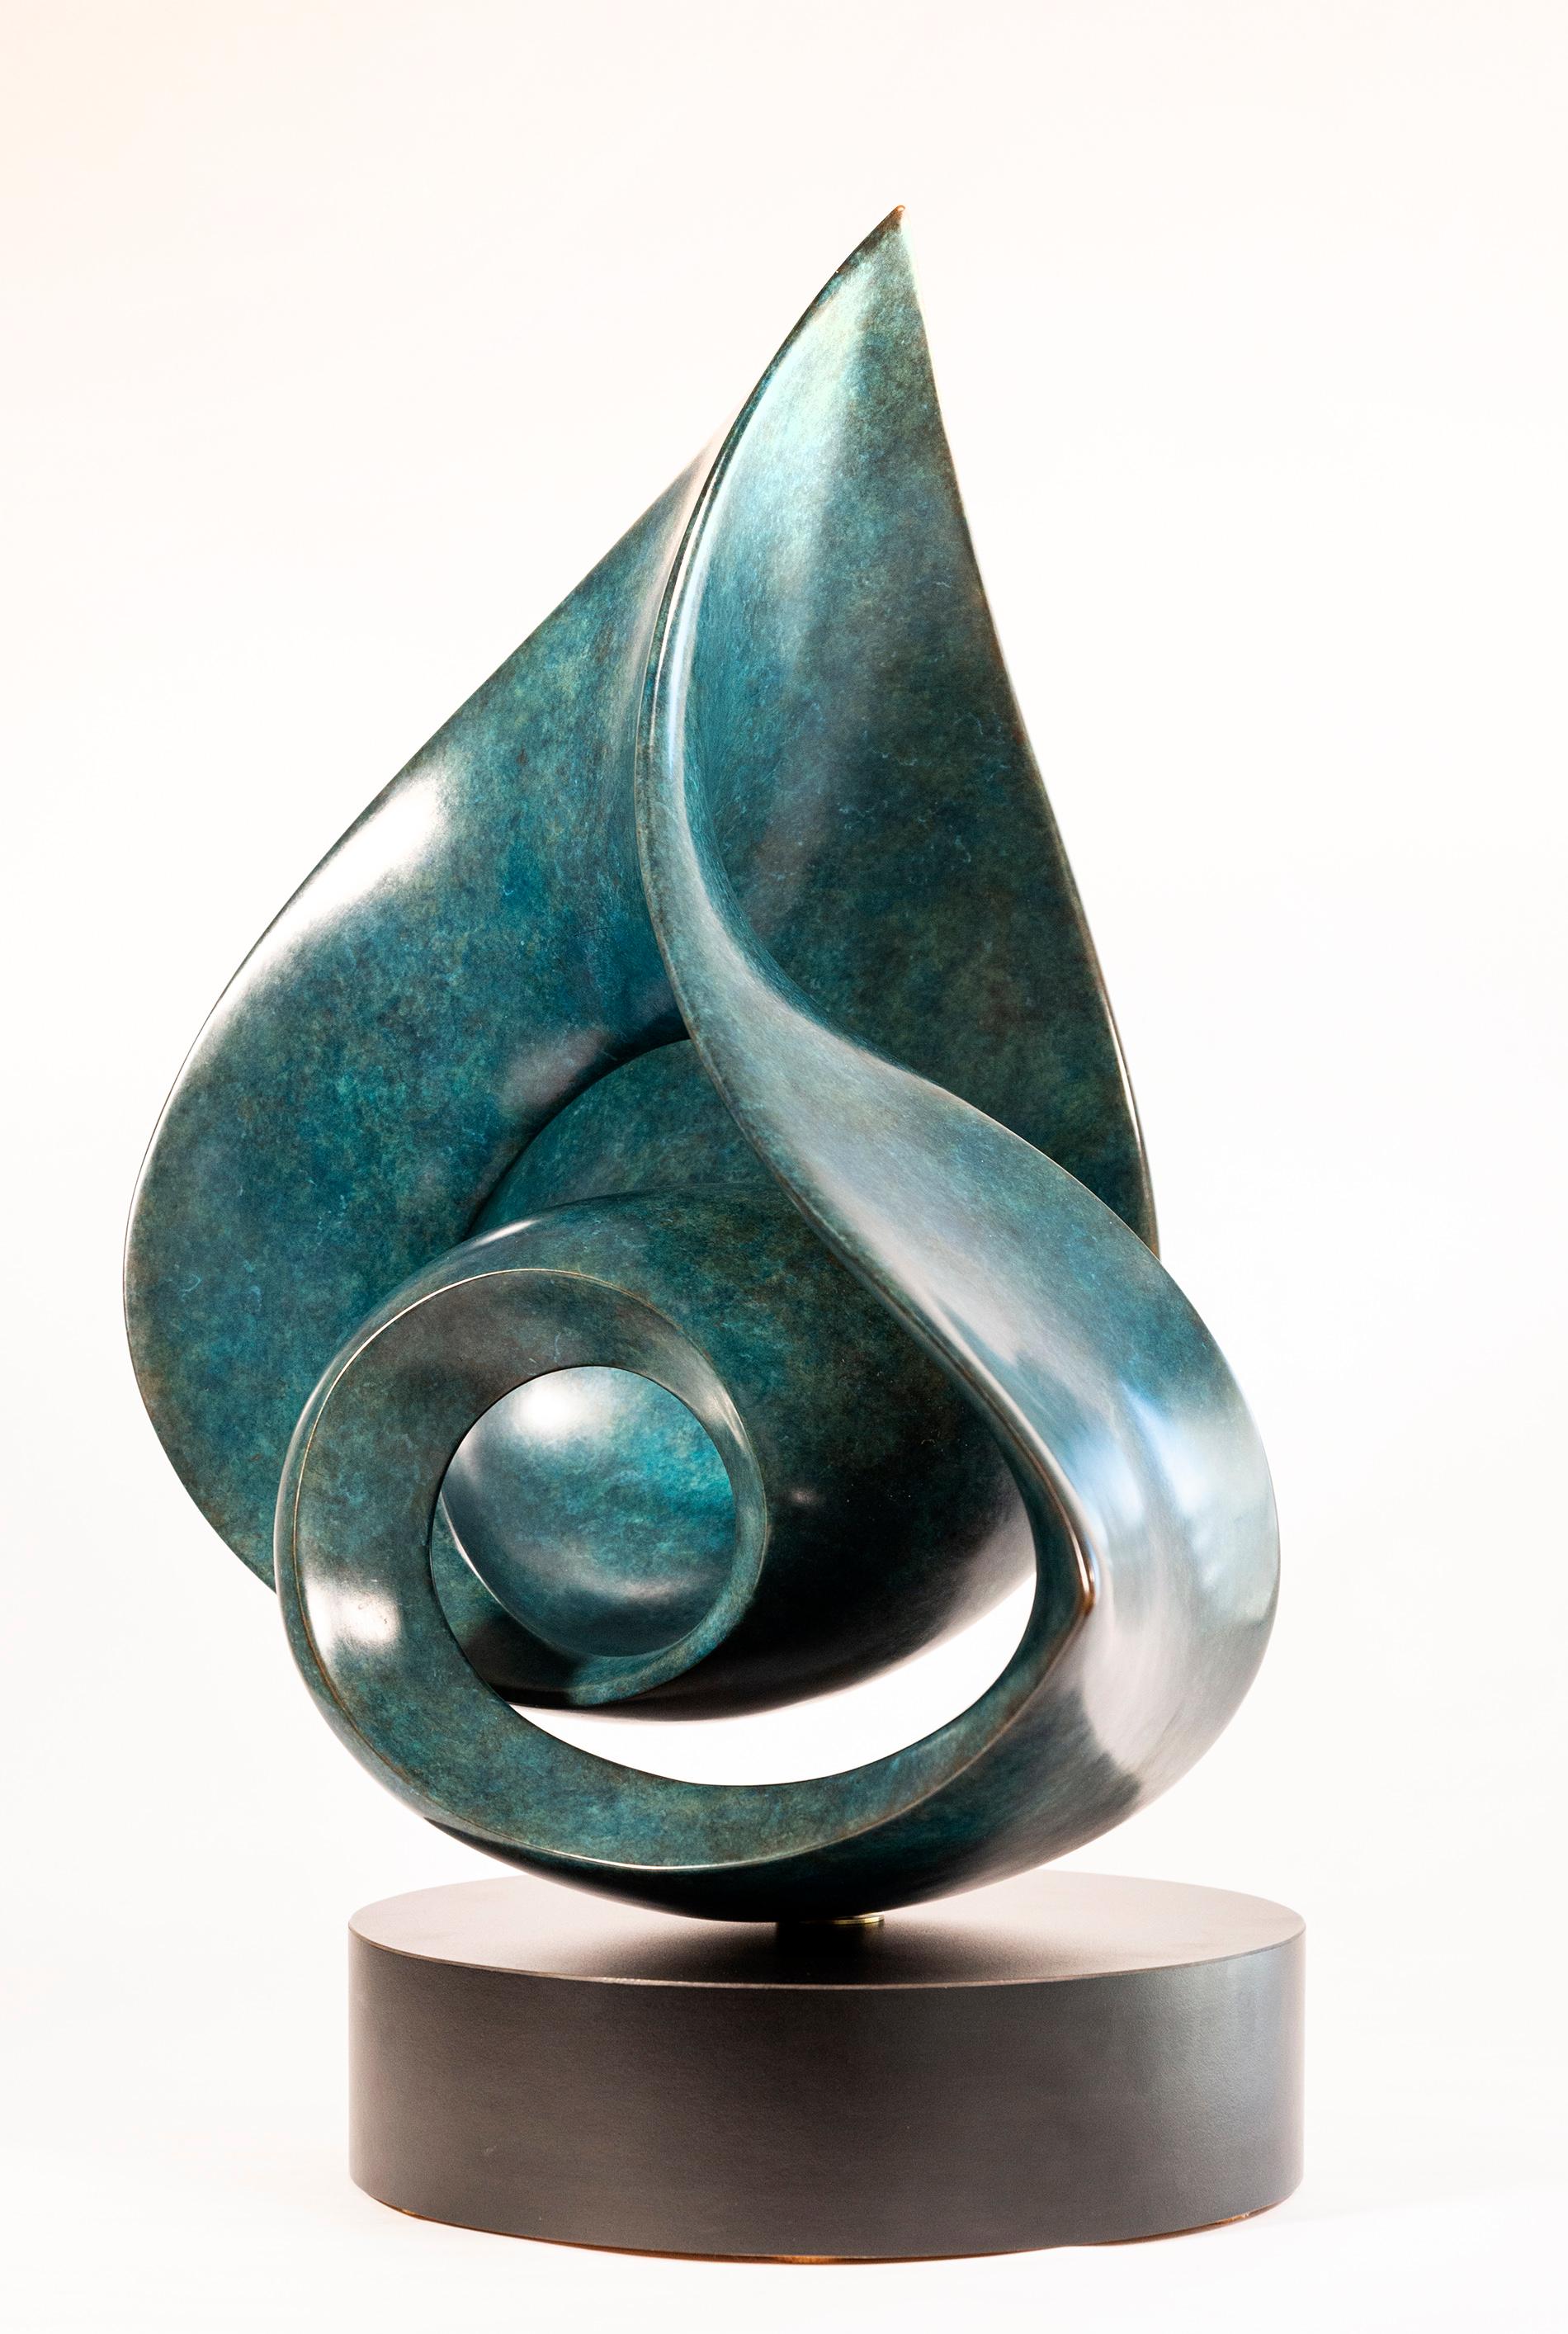 Aussi gracieuse que la forme d'une danseuse, cette sculpture contemporaine en bronze à la patine turquoise profonde est l'œuvre de David Chamberlain. Créée à partir d'une seule pièce continue et hautement polie, la brillance accentue la forme en